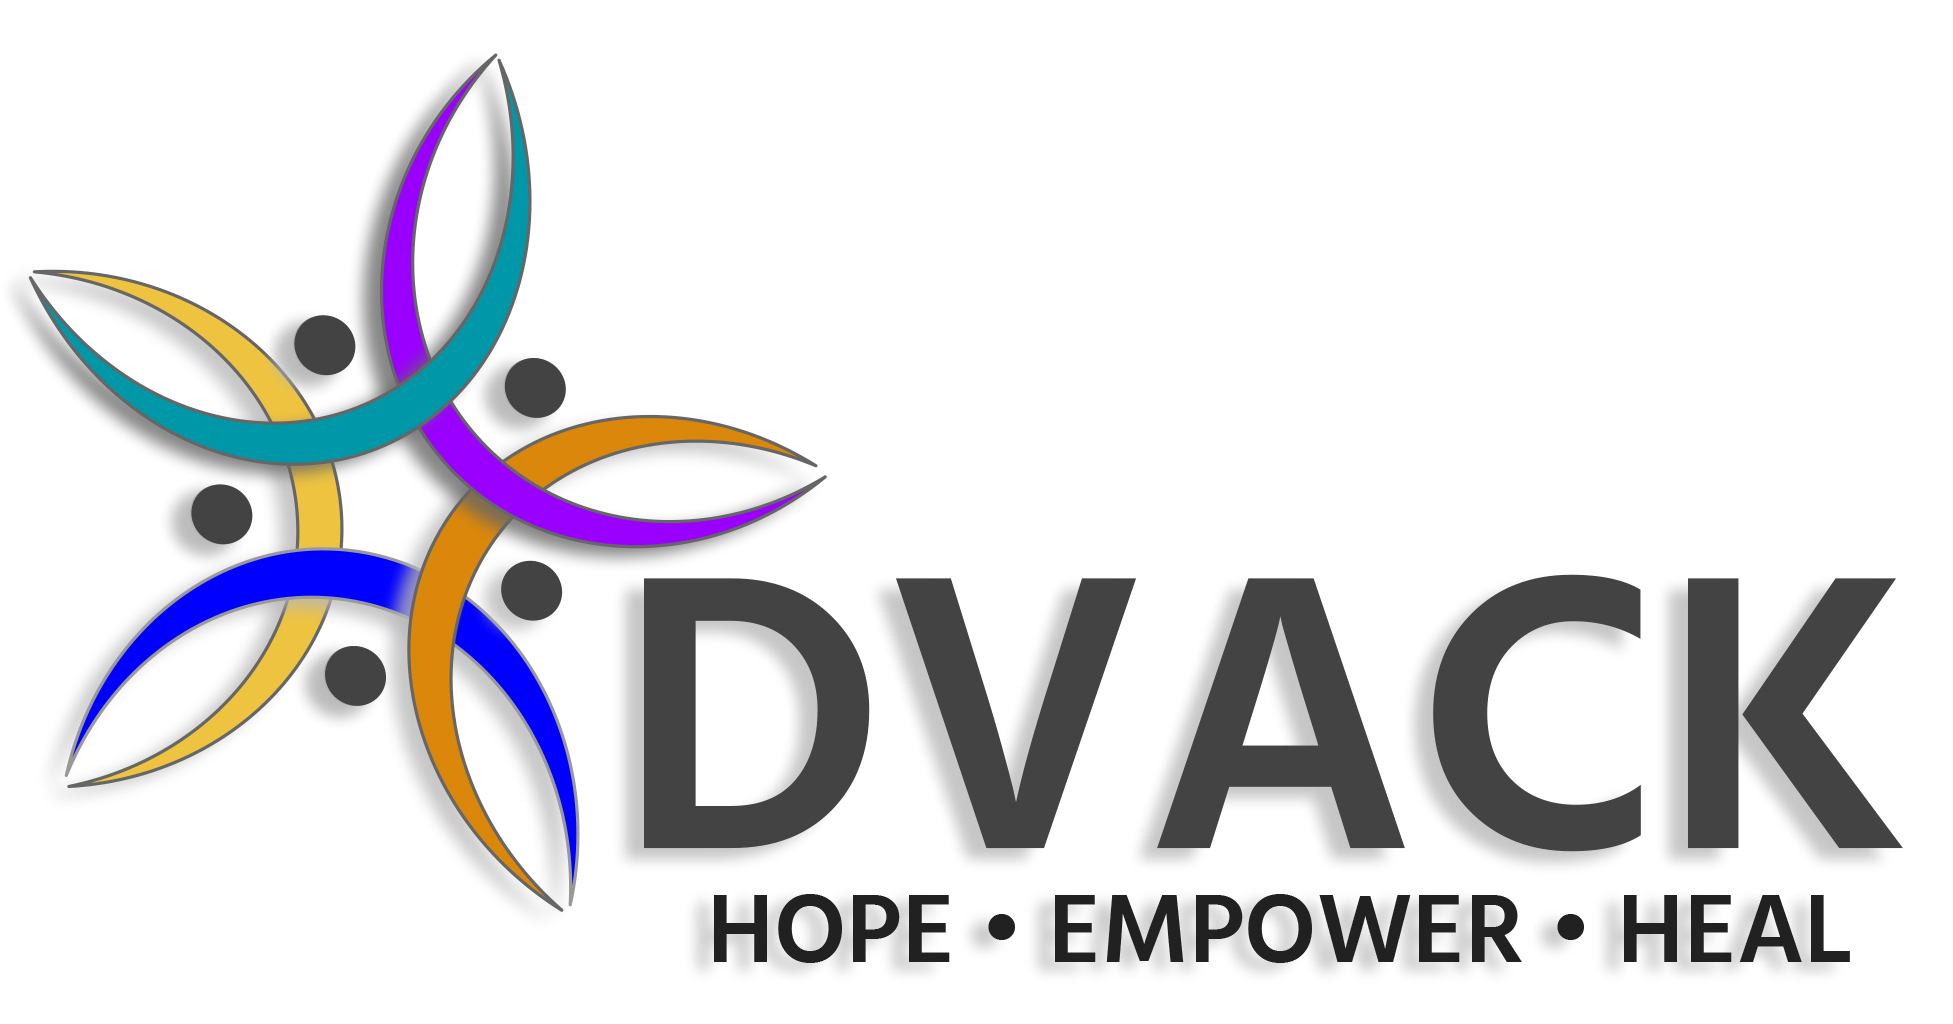 The logo for DVACK.